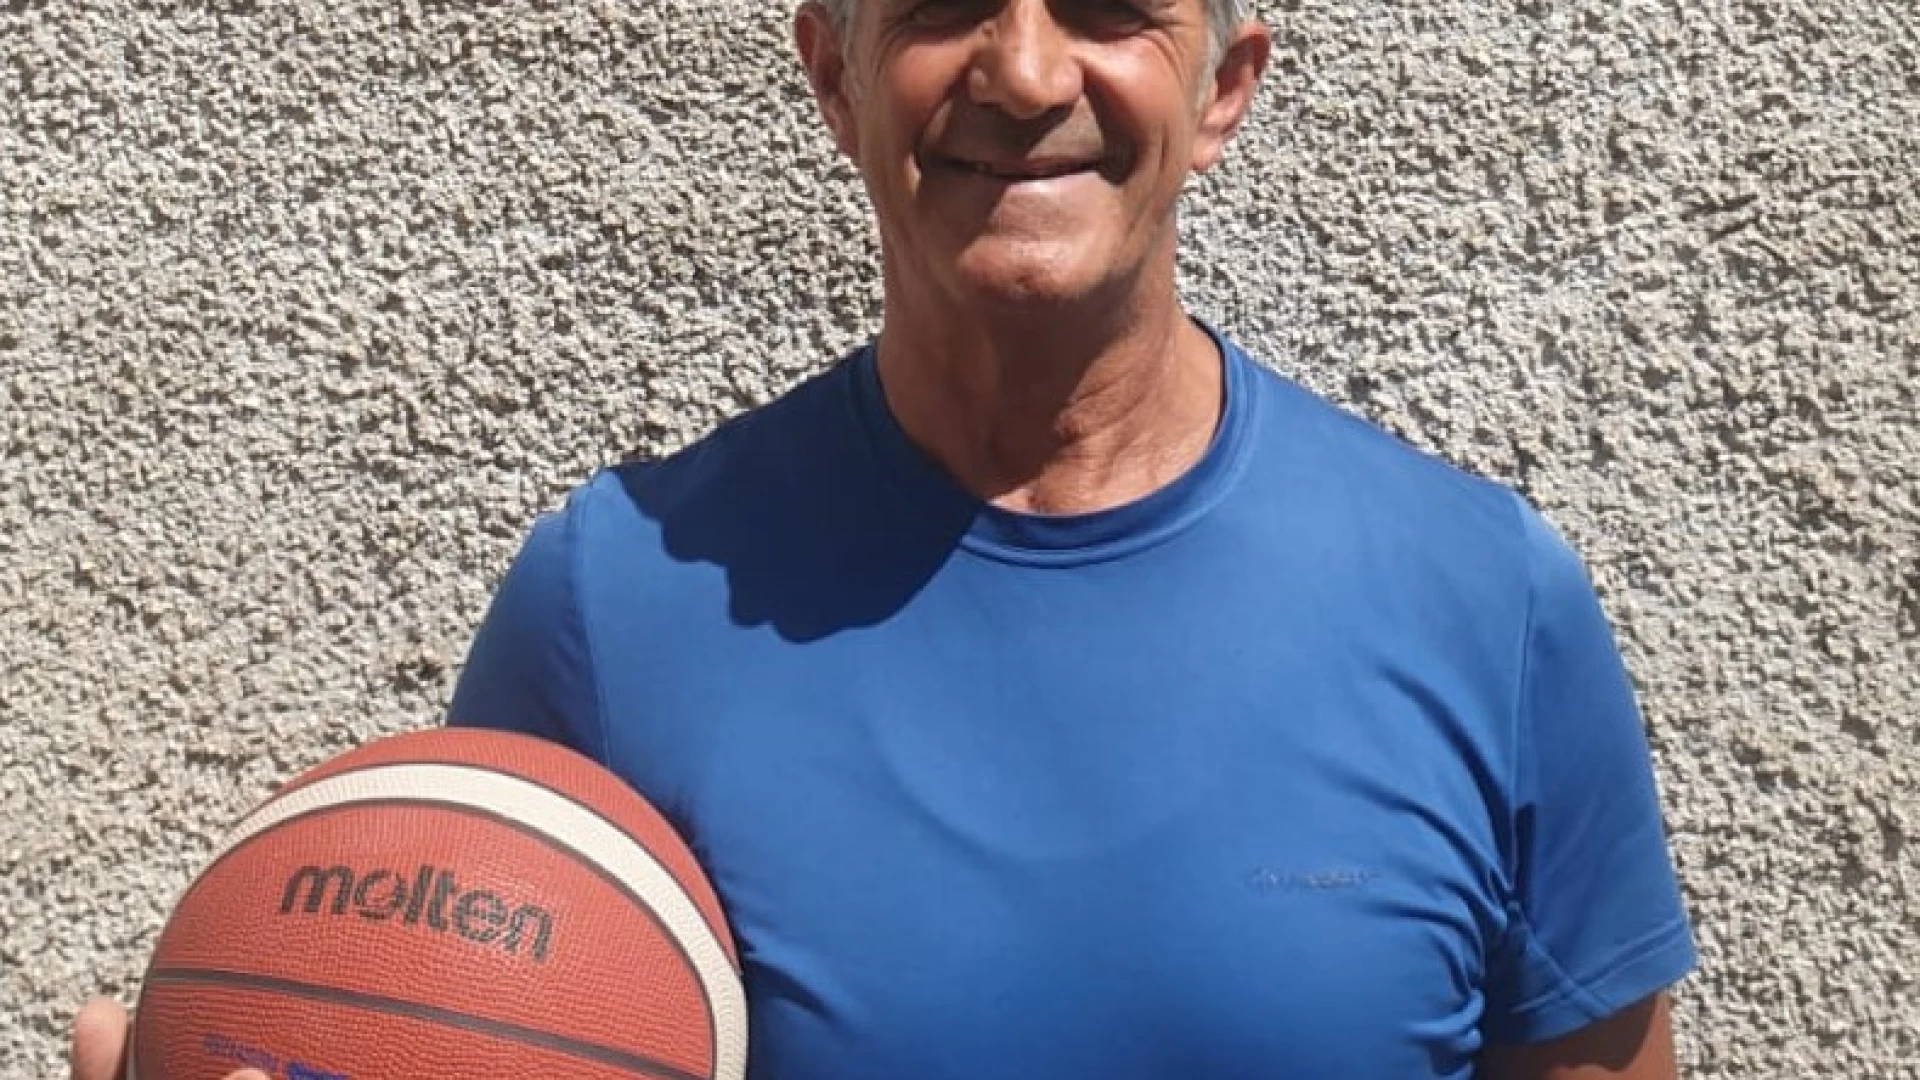 Nasce la New Mini Basket Isernia, Tiziano Rosignoli nominato responsabile tecnico